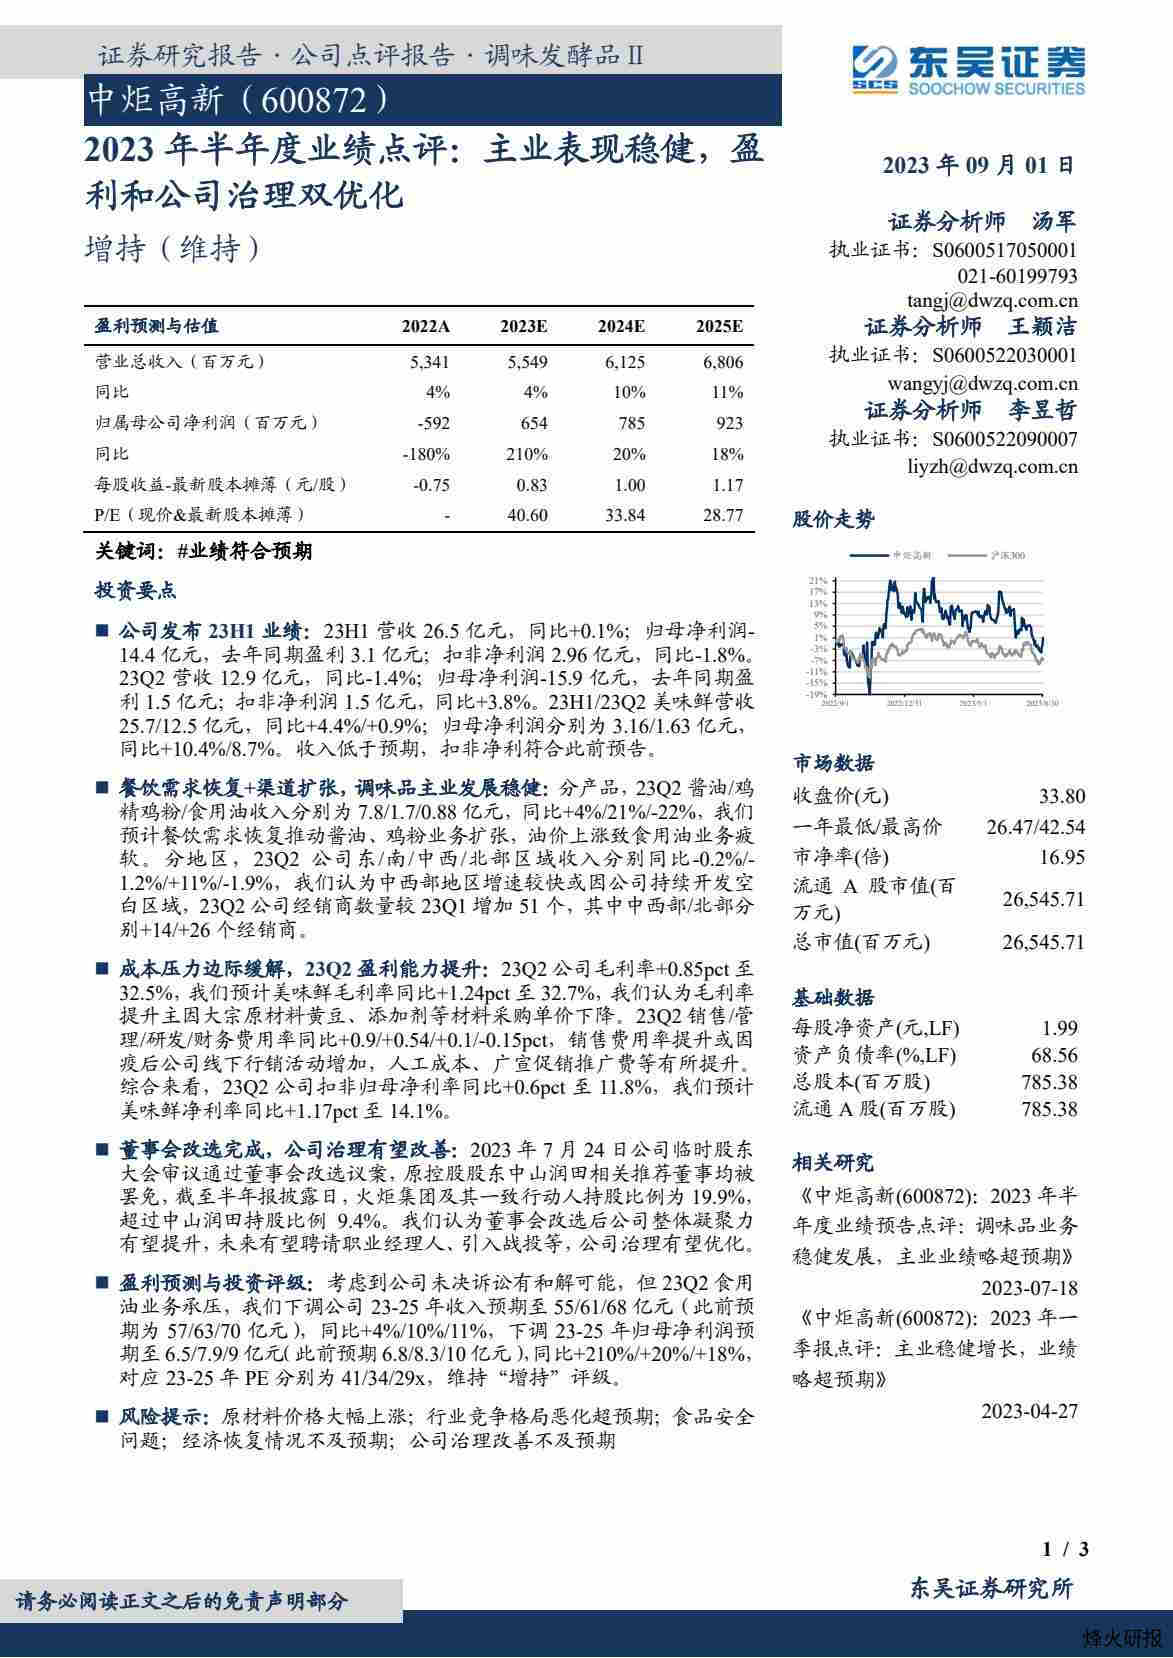 【东吴证券】2023年半年度业绩点评：主业表现稳健，盈利和公司治理双优化.pdf-第一页